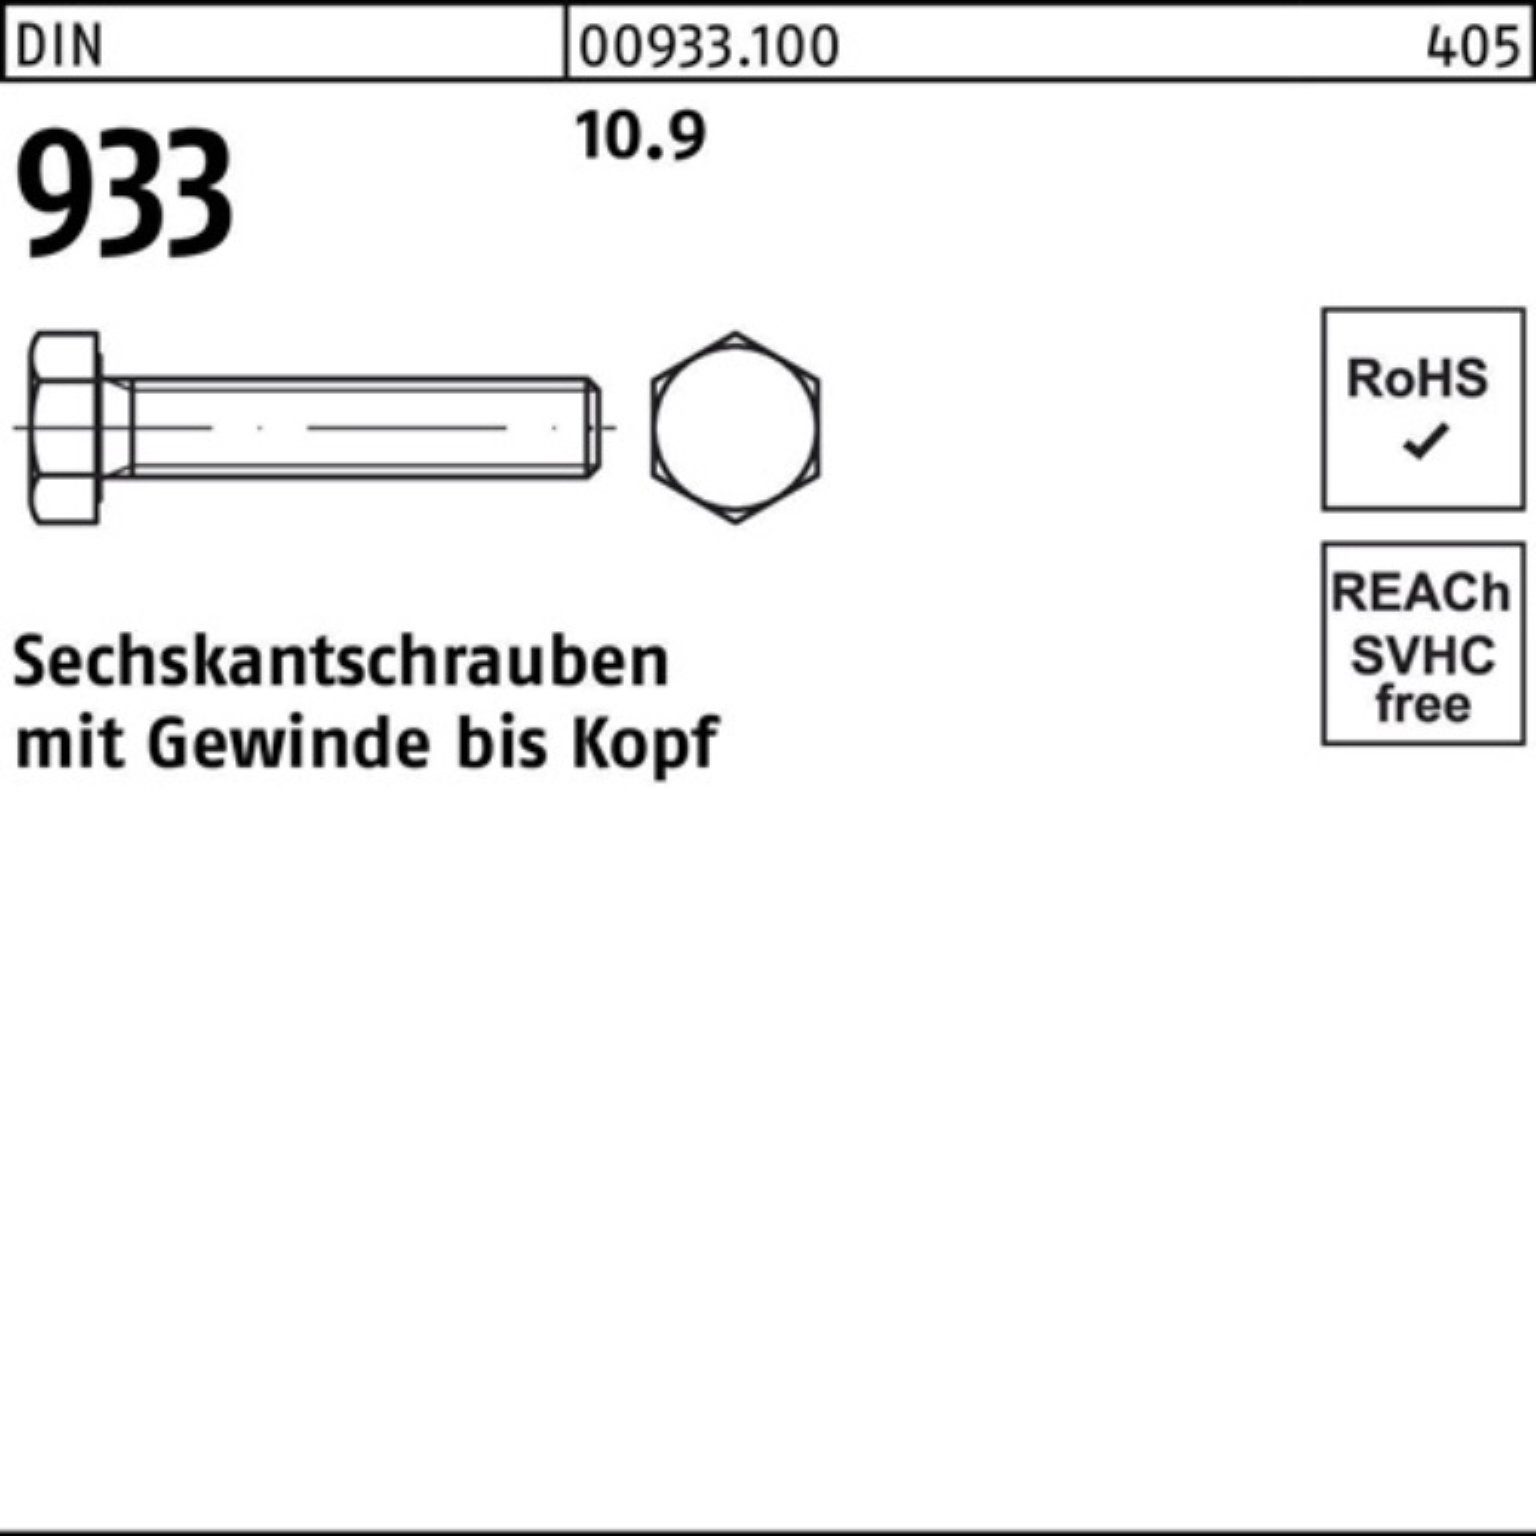 10 DIN 10.9 933 Sechskantschraube Pack Stück Reyher Sechskantschraube 75 DIN M27x VG 933 100er